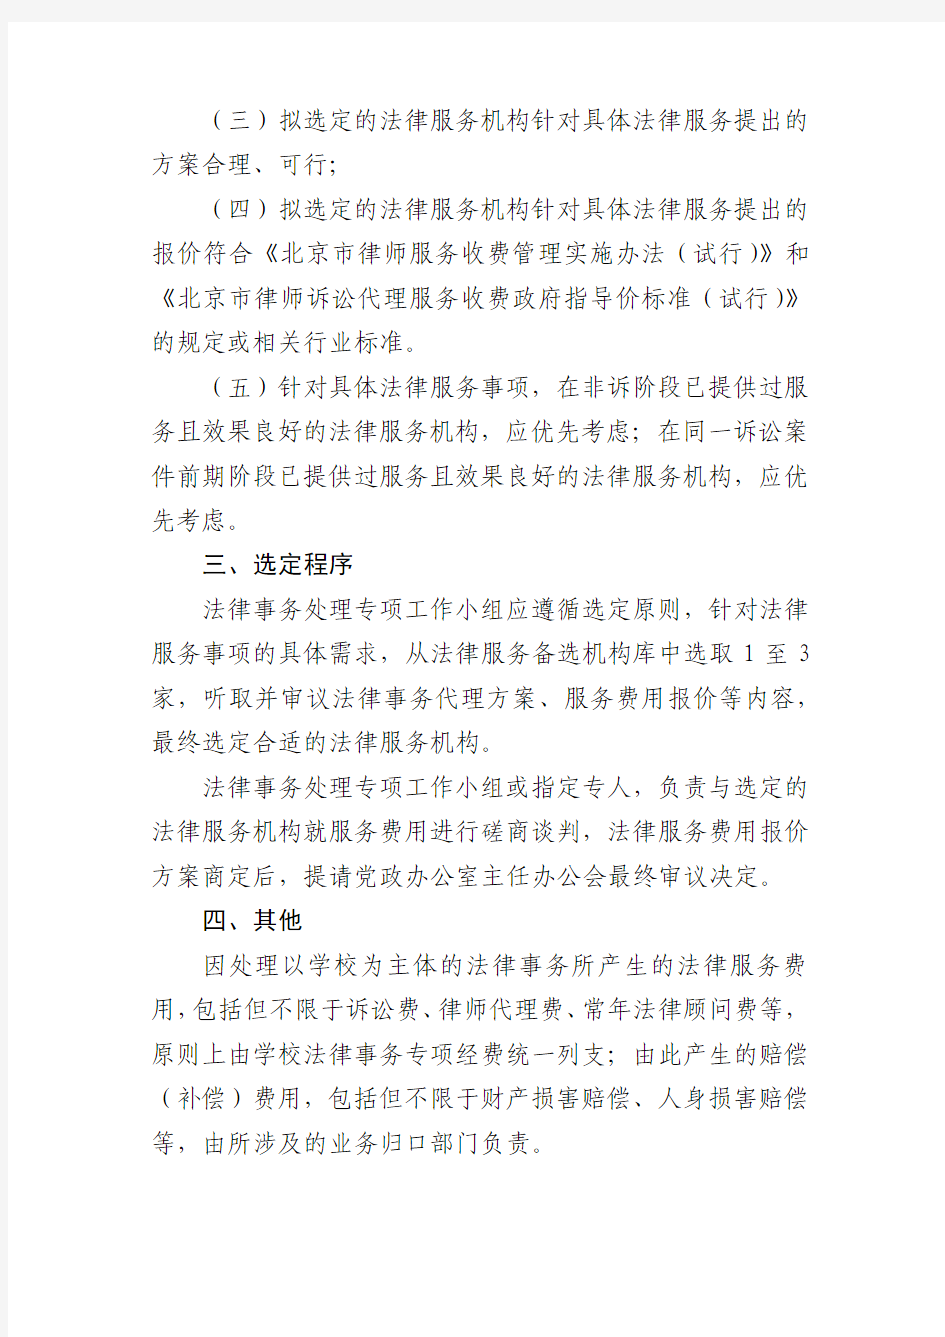 北京航空航天大学法律服务机构选定工作细则试行